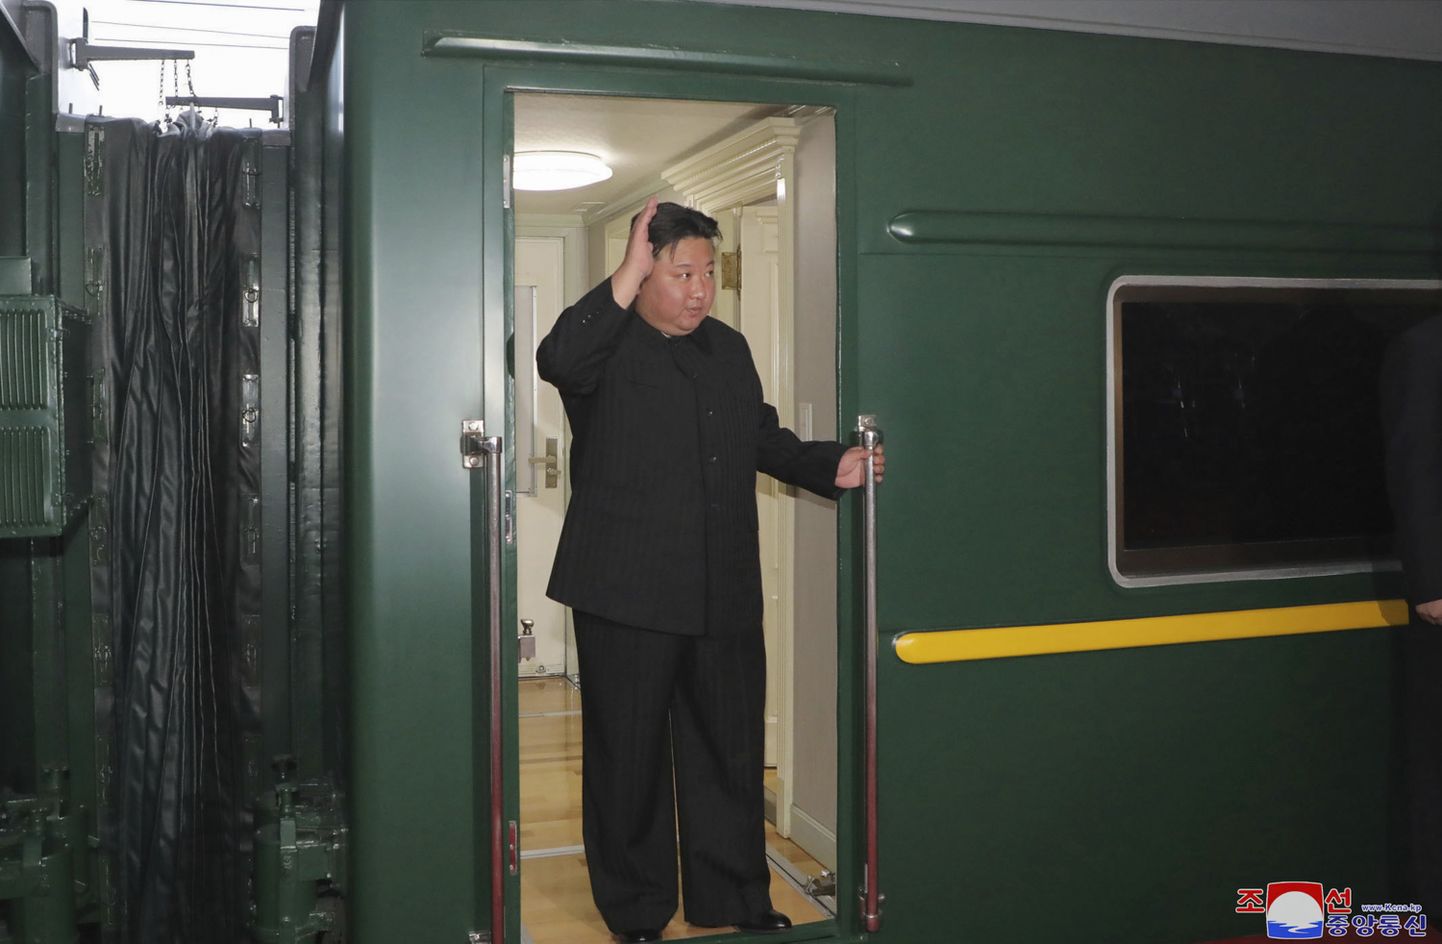 Ziemeļkorejas diktators Kims Čenuns